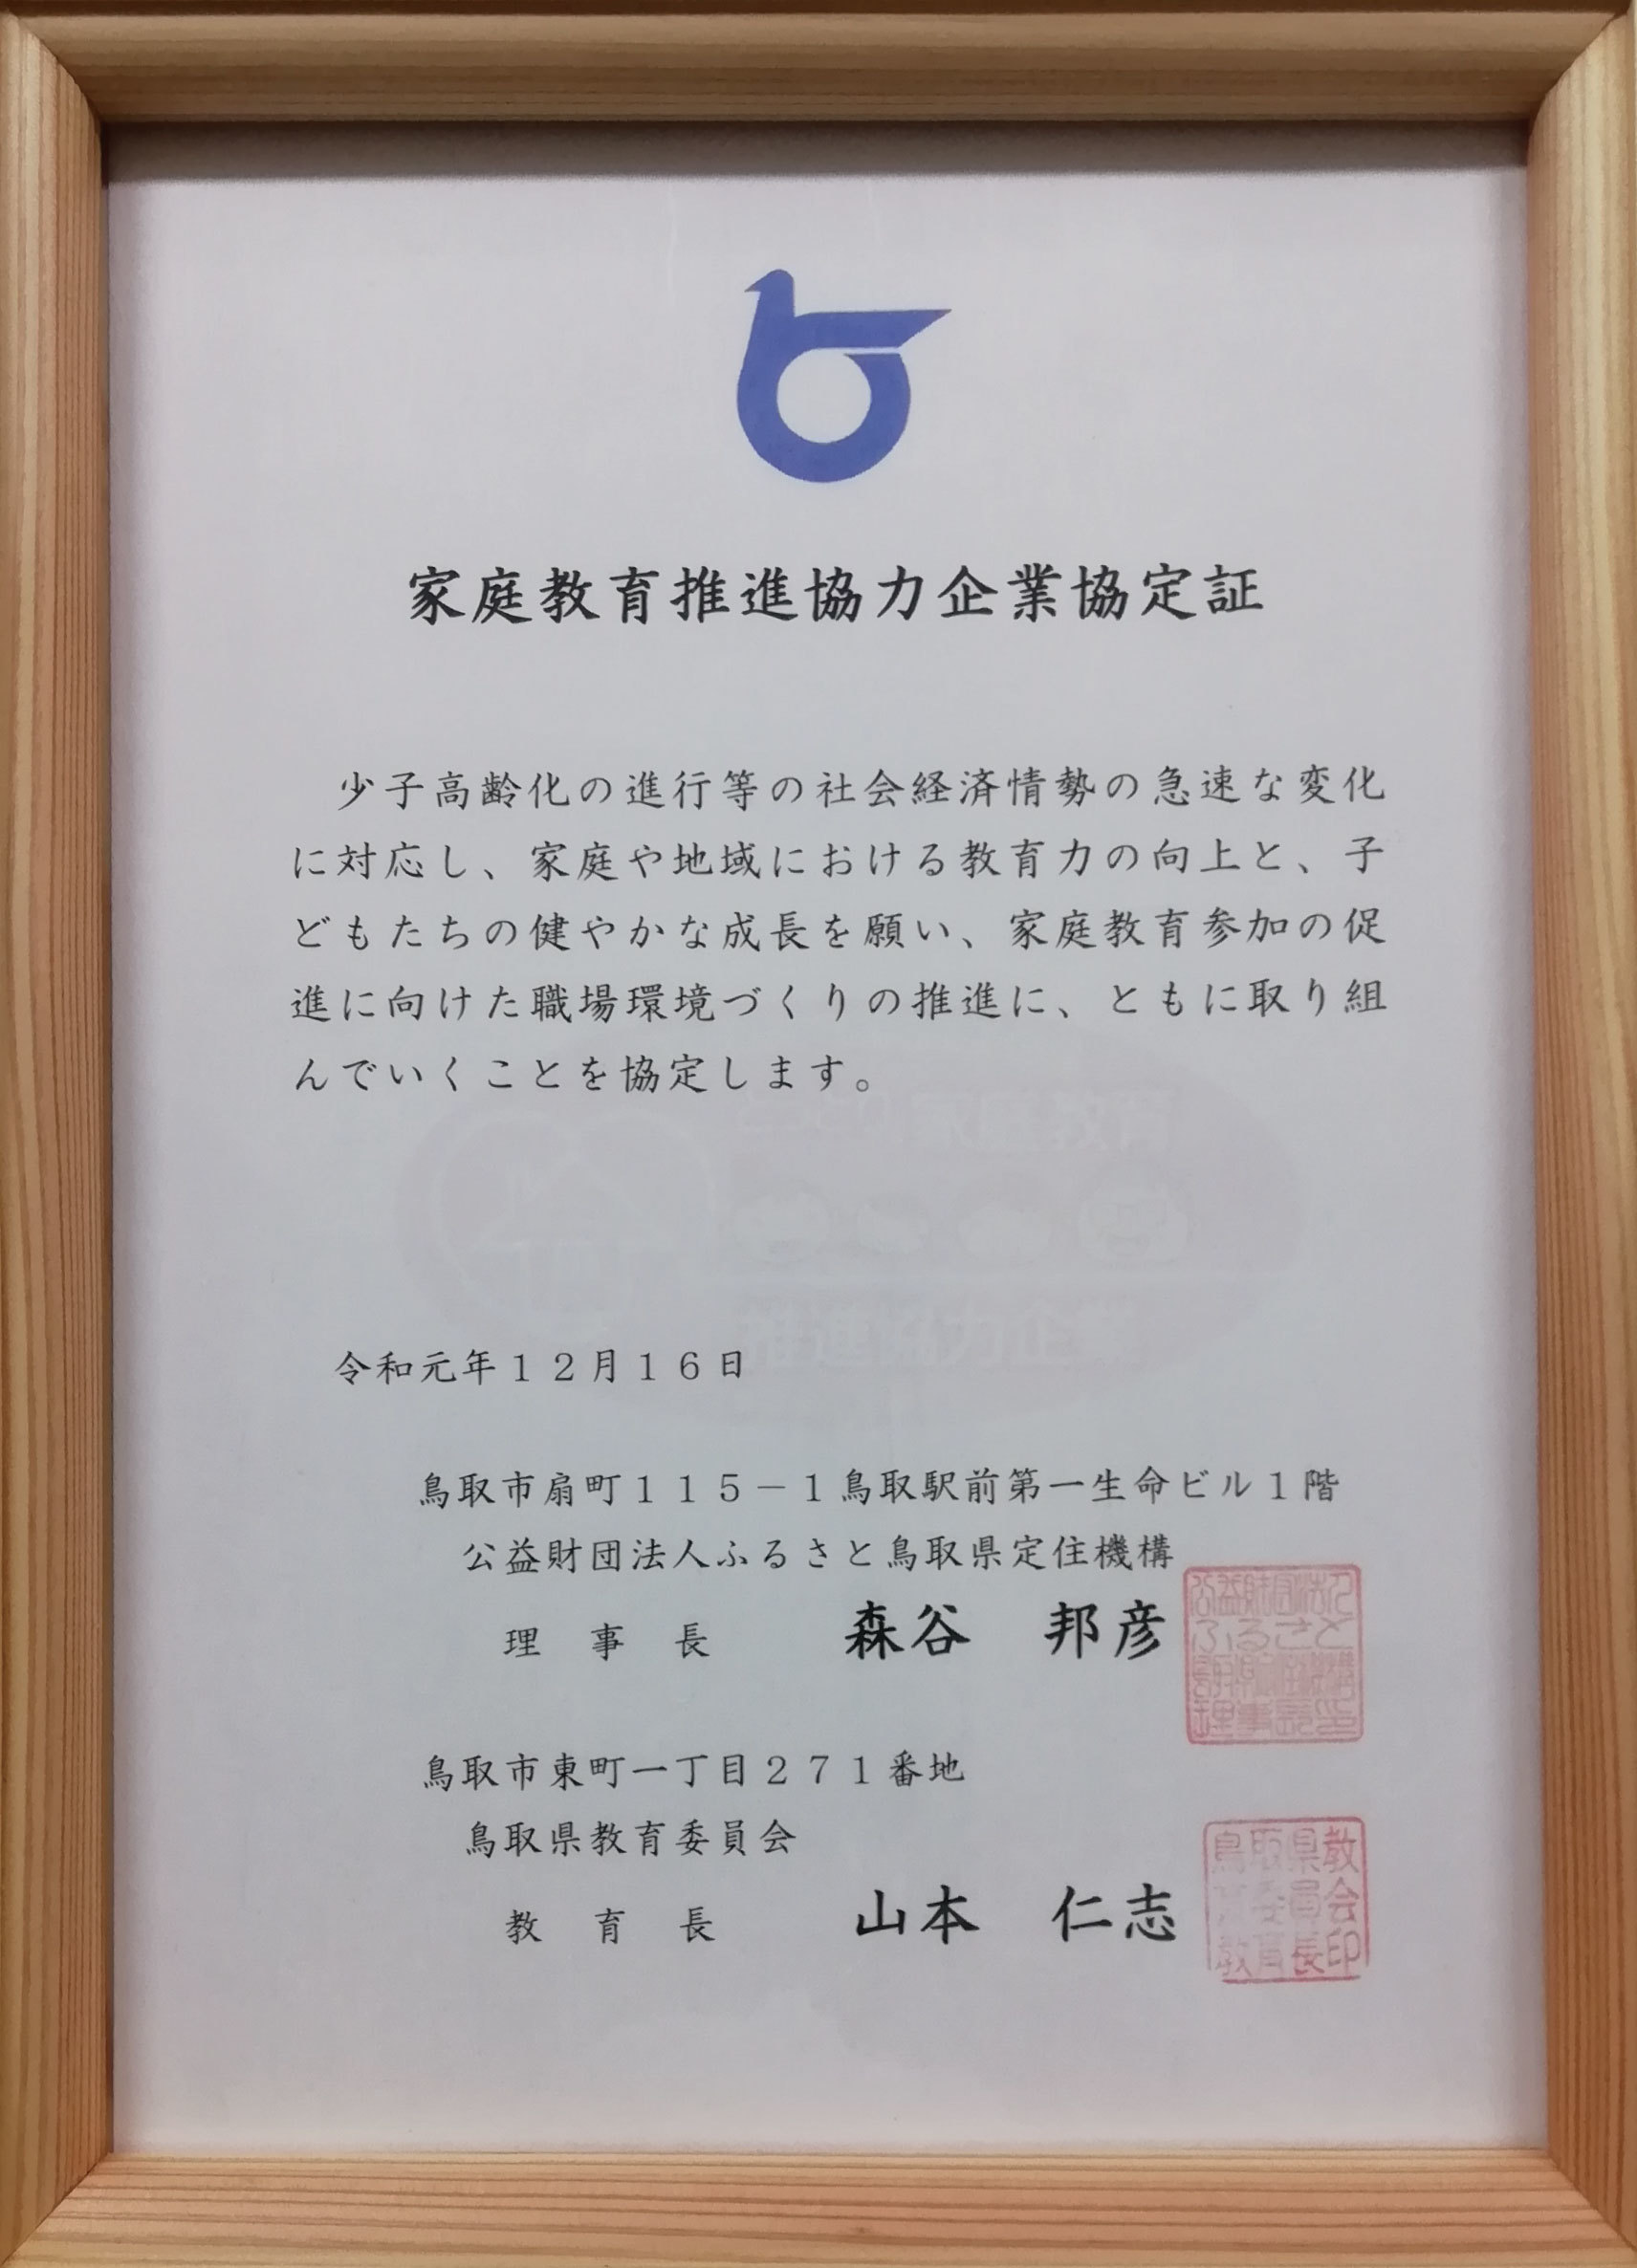 鳥取県家庭教育推進協力企業認定証